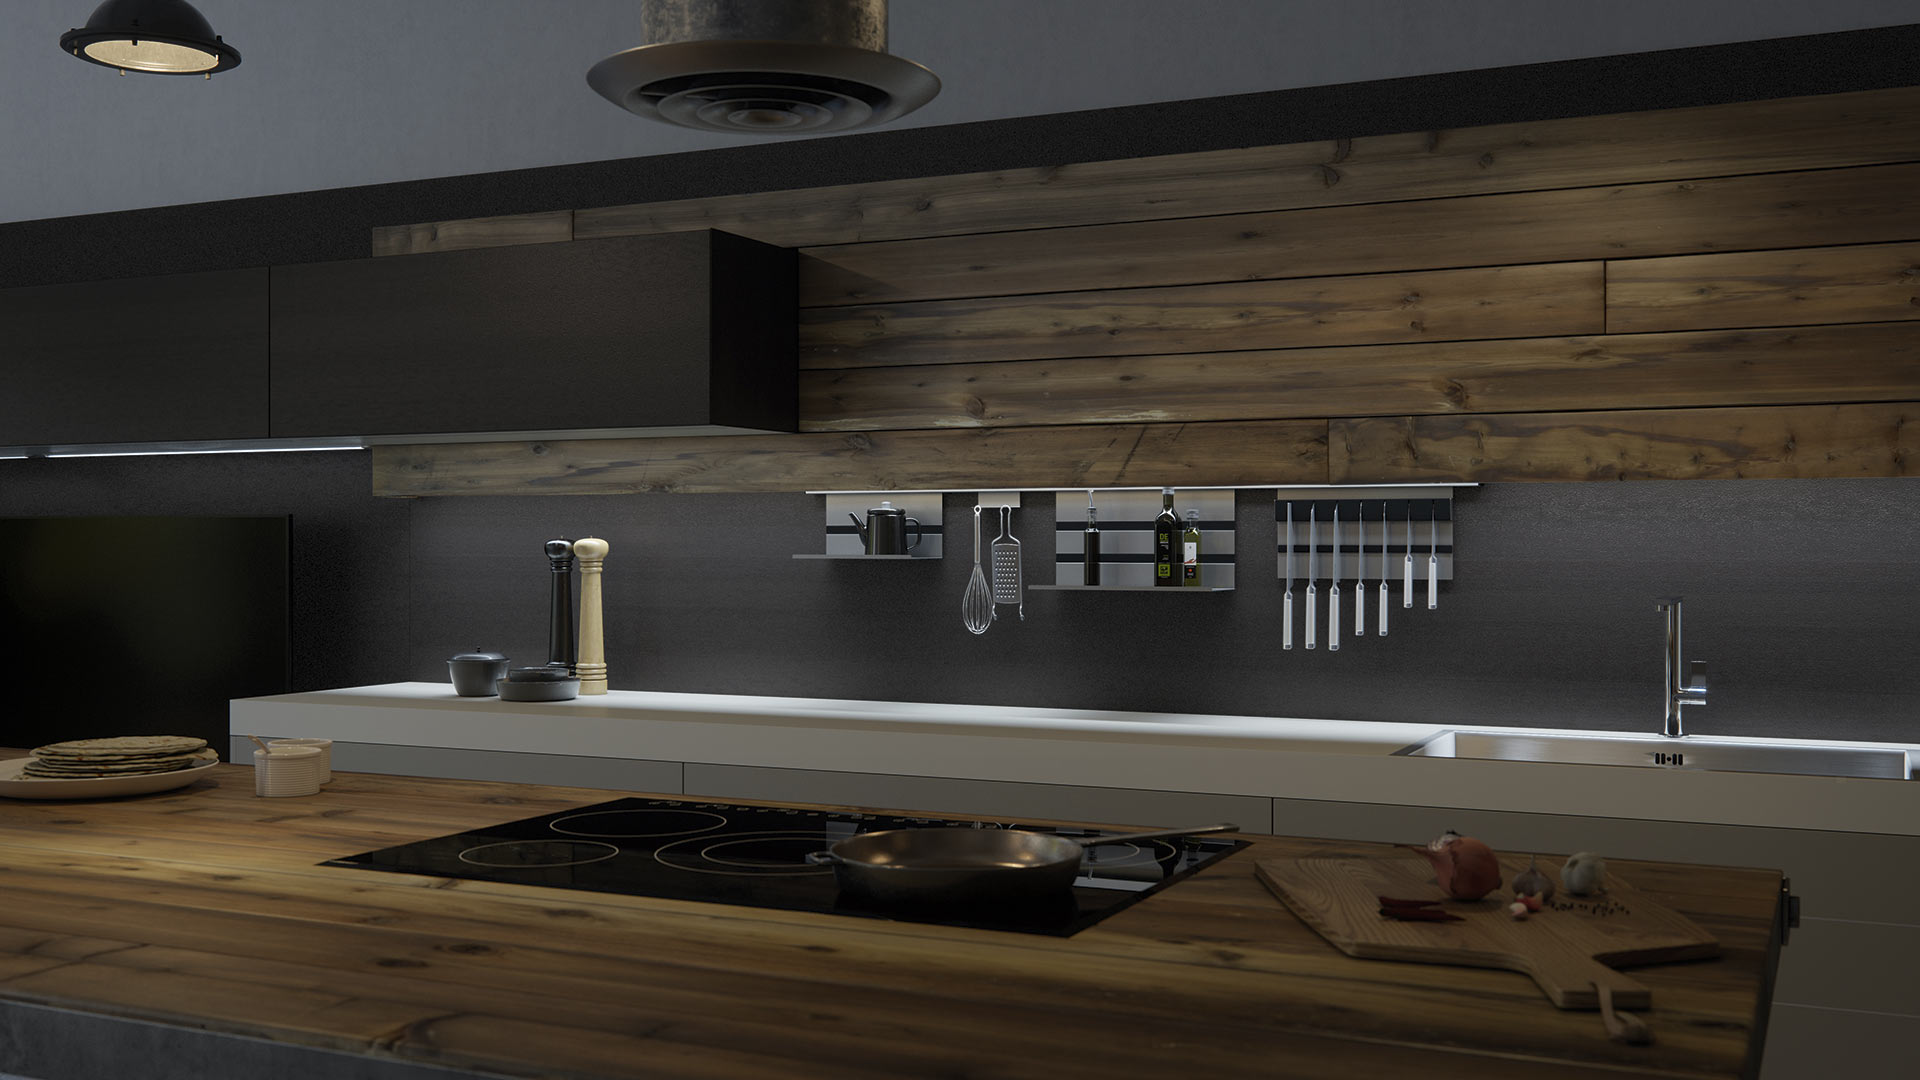 Vista detallada de una vanguardista cocina de acabado en madera con utensilios de cocina como una tabla de cortar o una sartén sobre la vitrocerámica